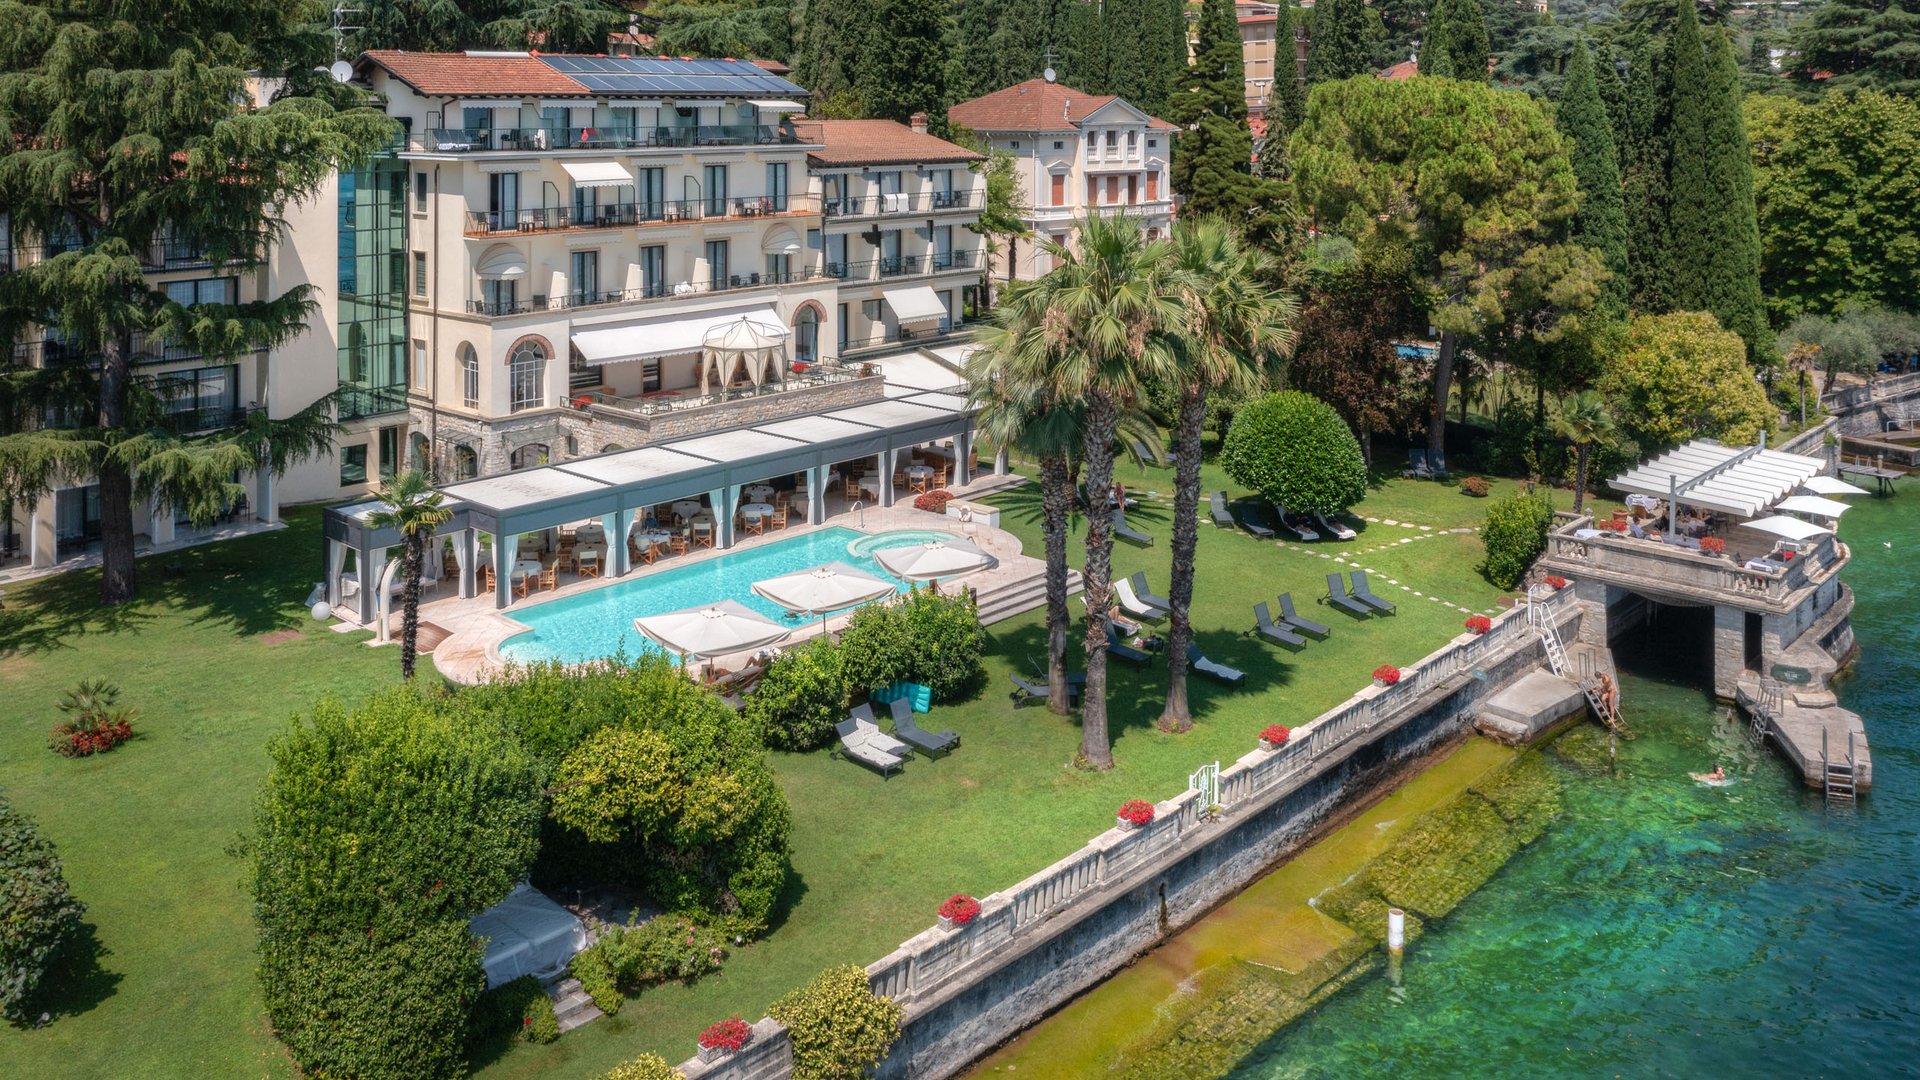 Die Villa Capri – Euer Luxushotel am Gardasee